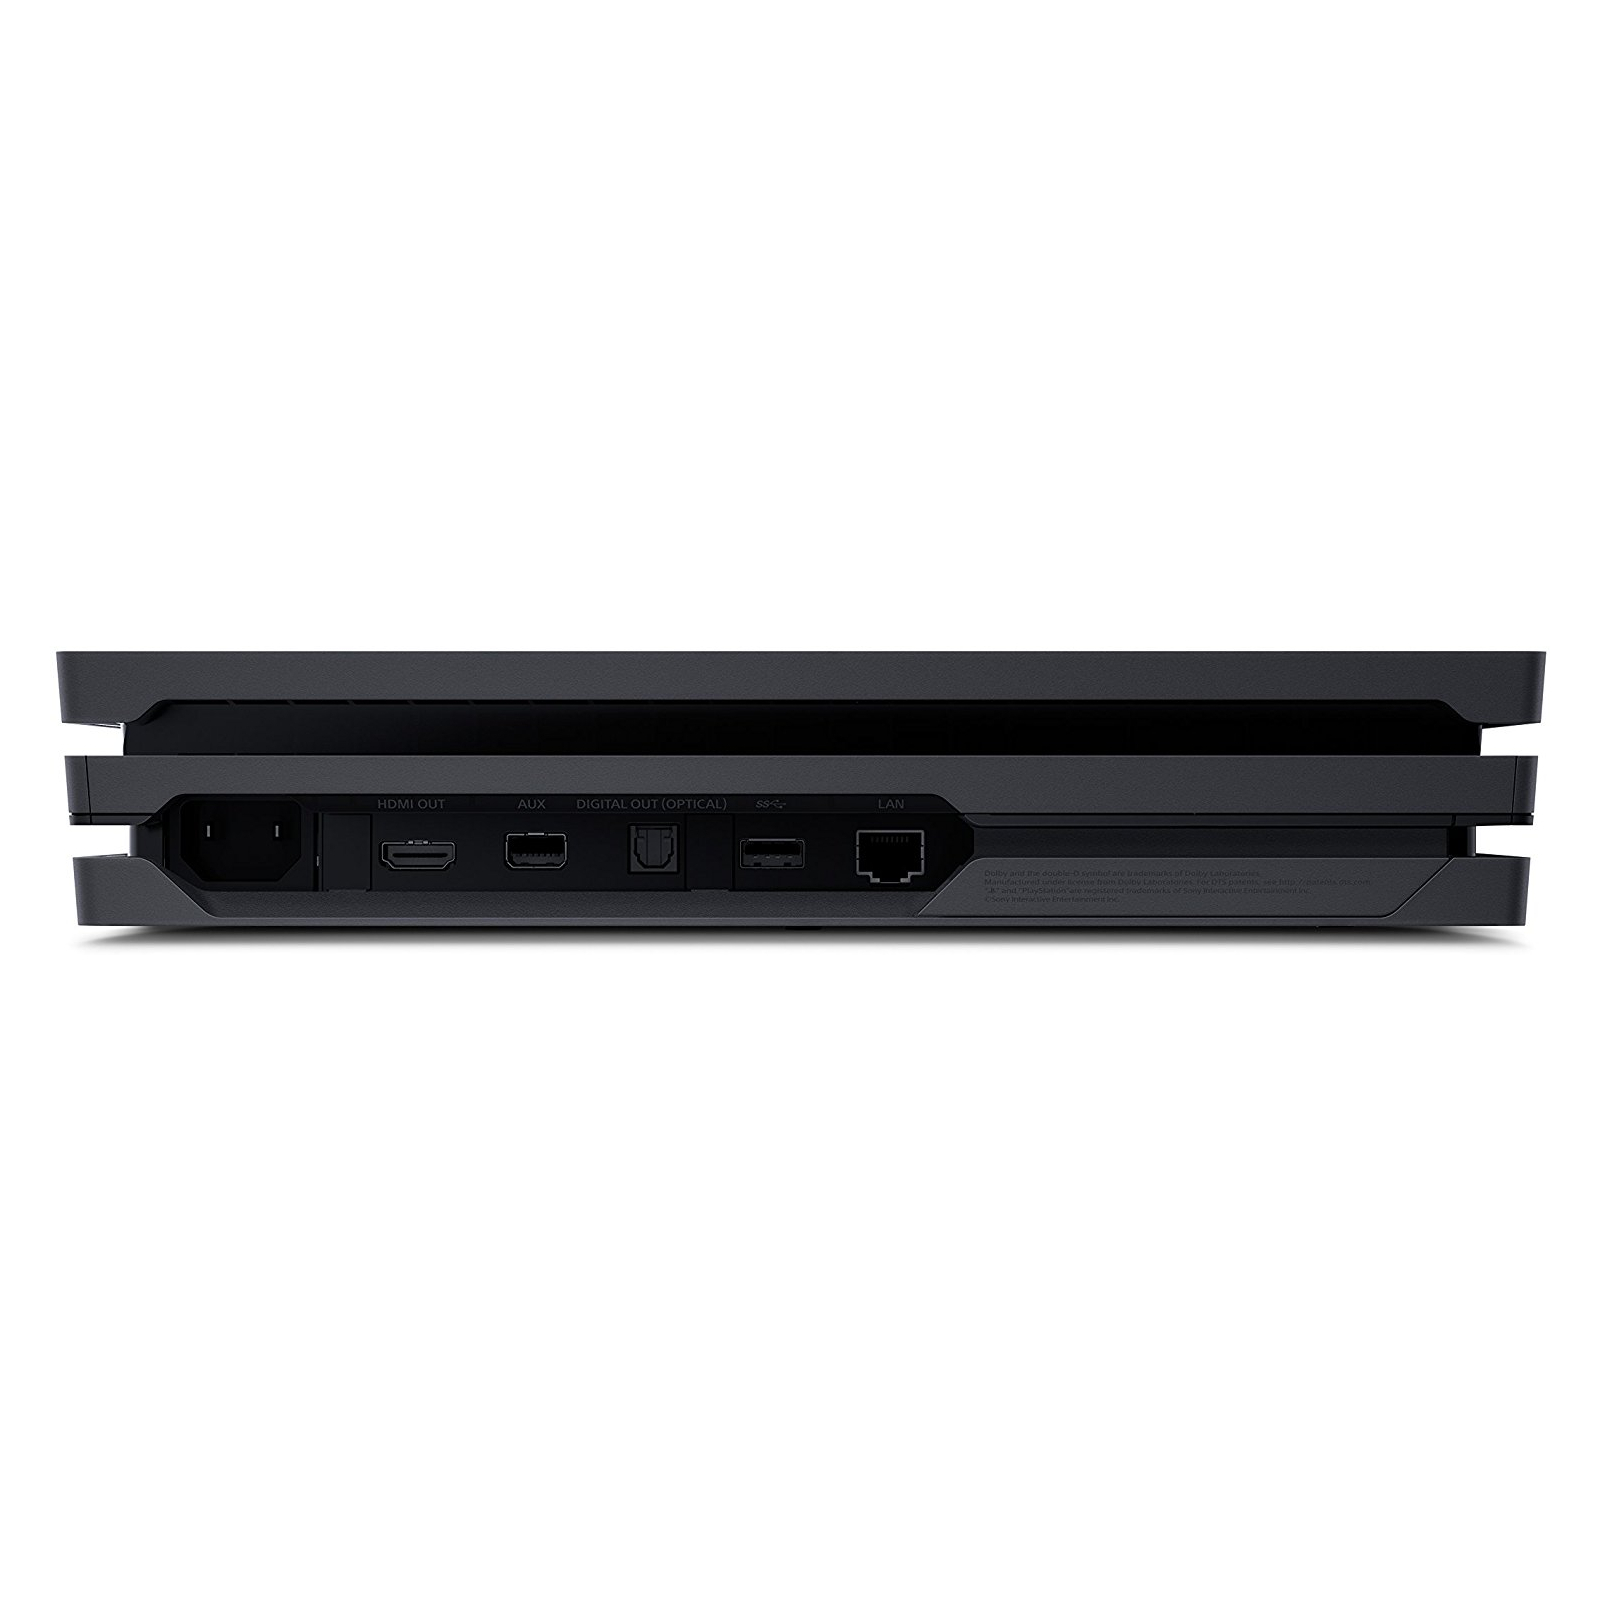 Игровая консоль Sony PlayStation 4 Pro 1TB + PlayStation VR изображение 2